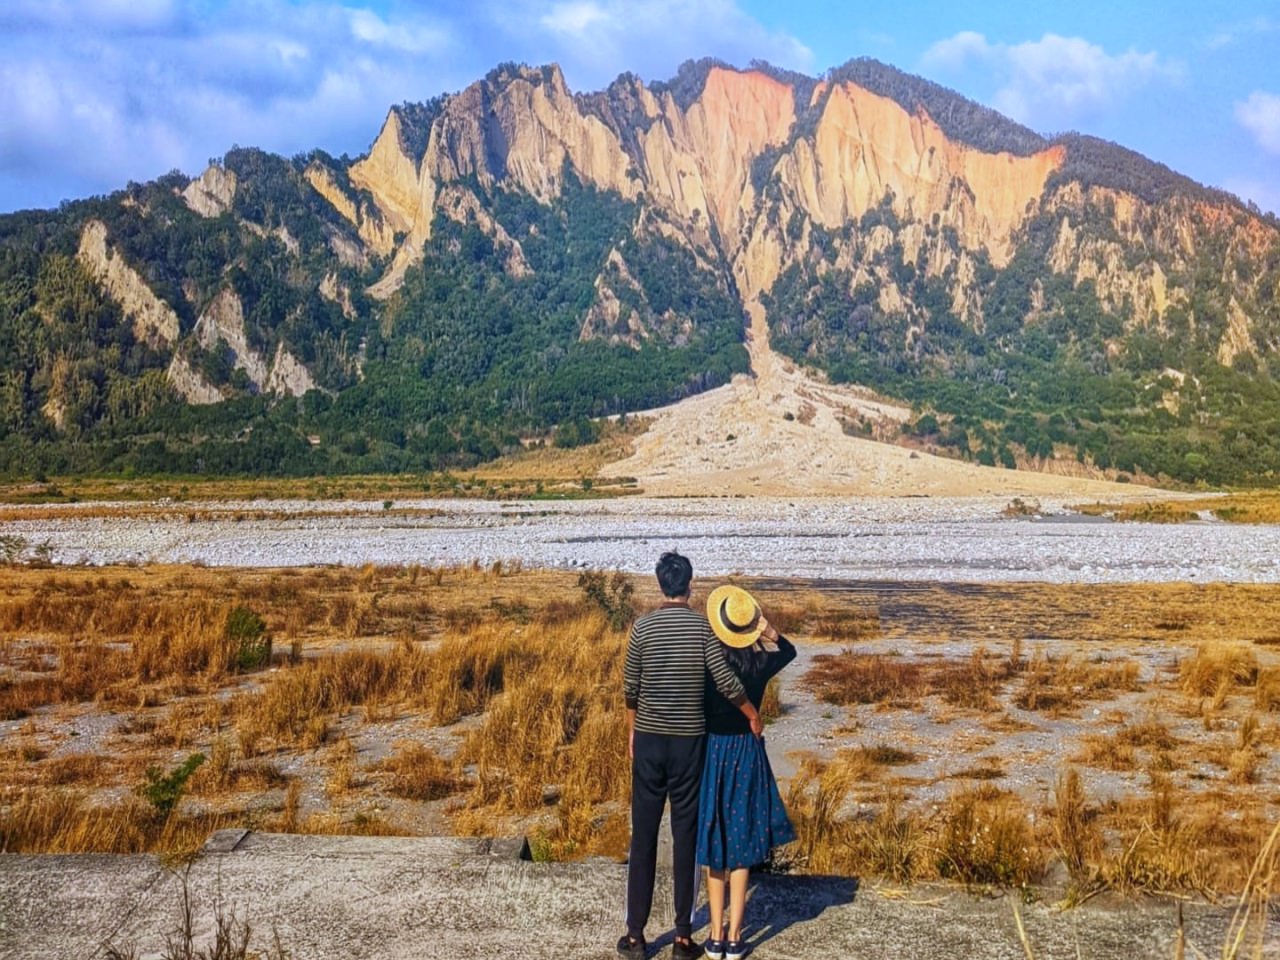 壯觀的火炎山拍照點 隔著河谷欣賞台版大峽谷景色